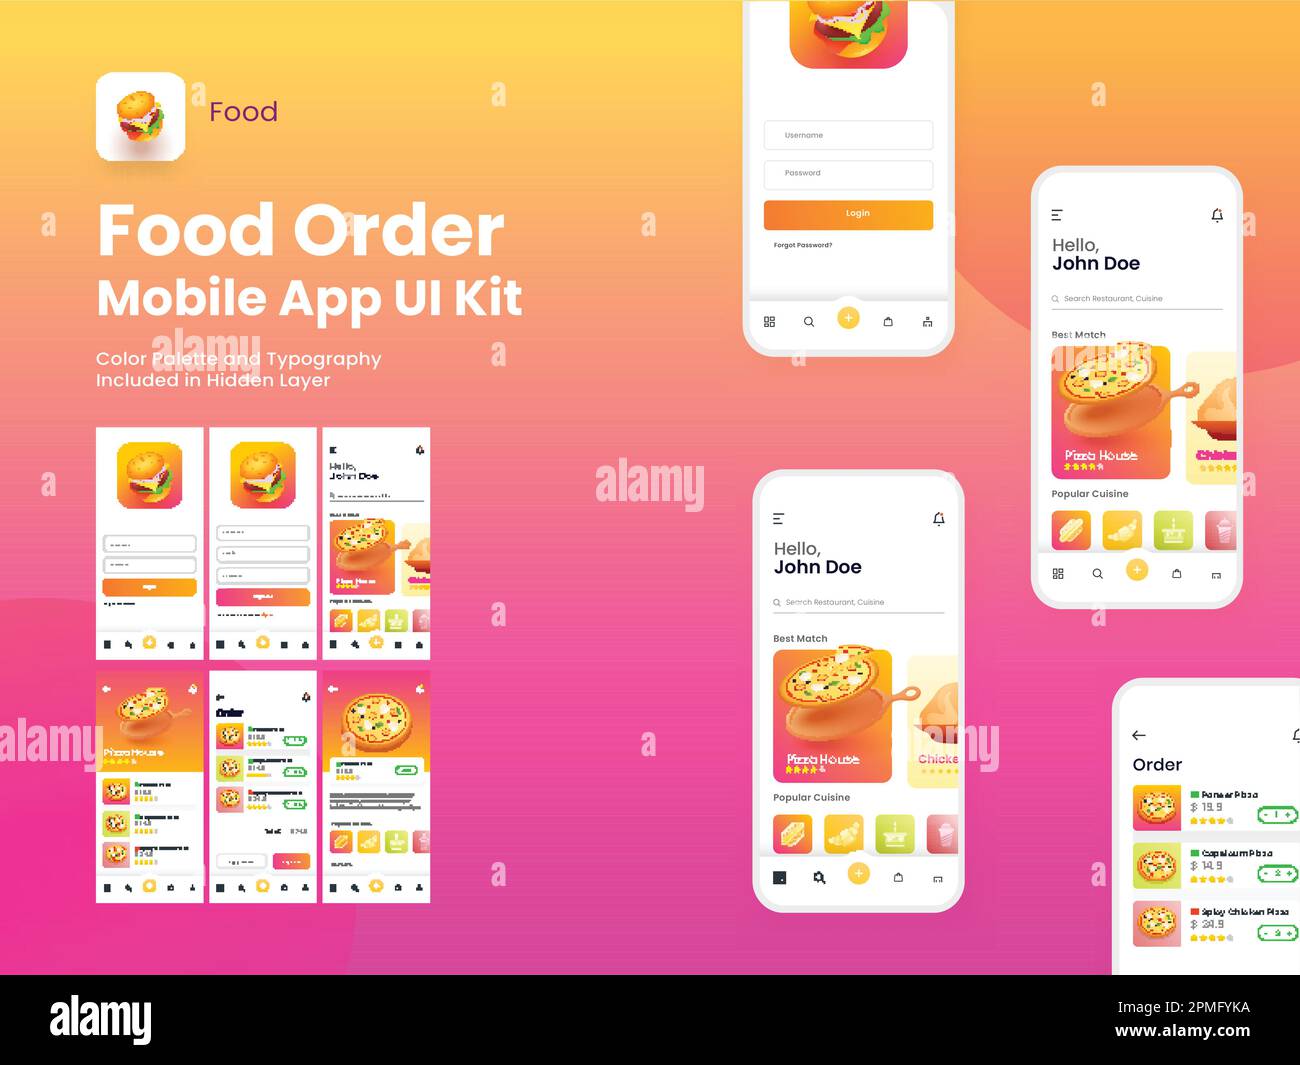 Online Food Order Mobile App UI-Kit mit Bildschirmen für Anmeldung, Registrierung, Lebensmittelmenü, Zahlung und Bestellbestätigung. Stock Vektor